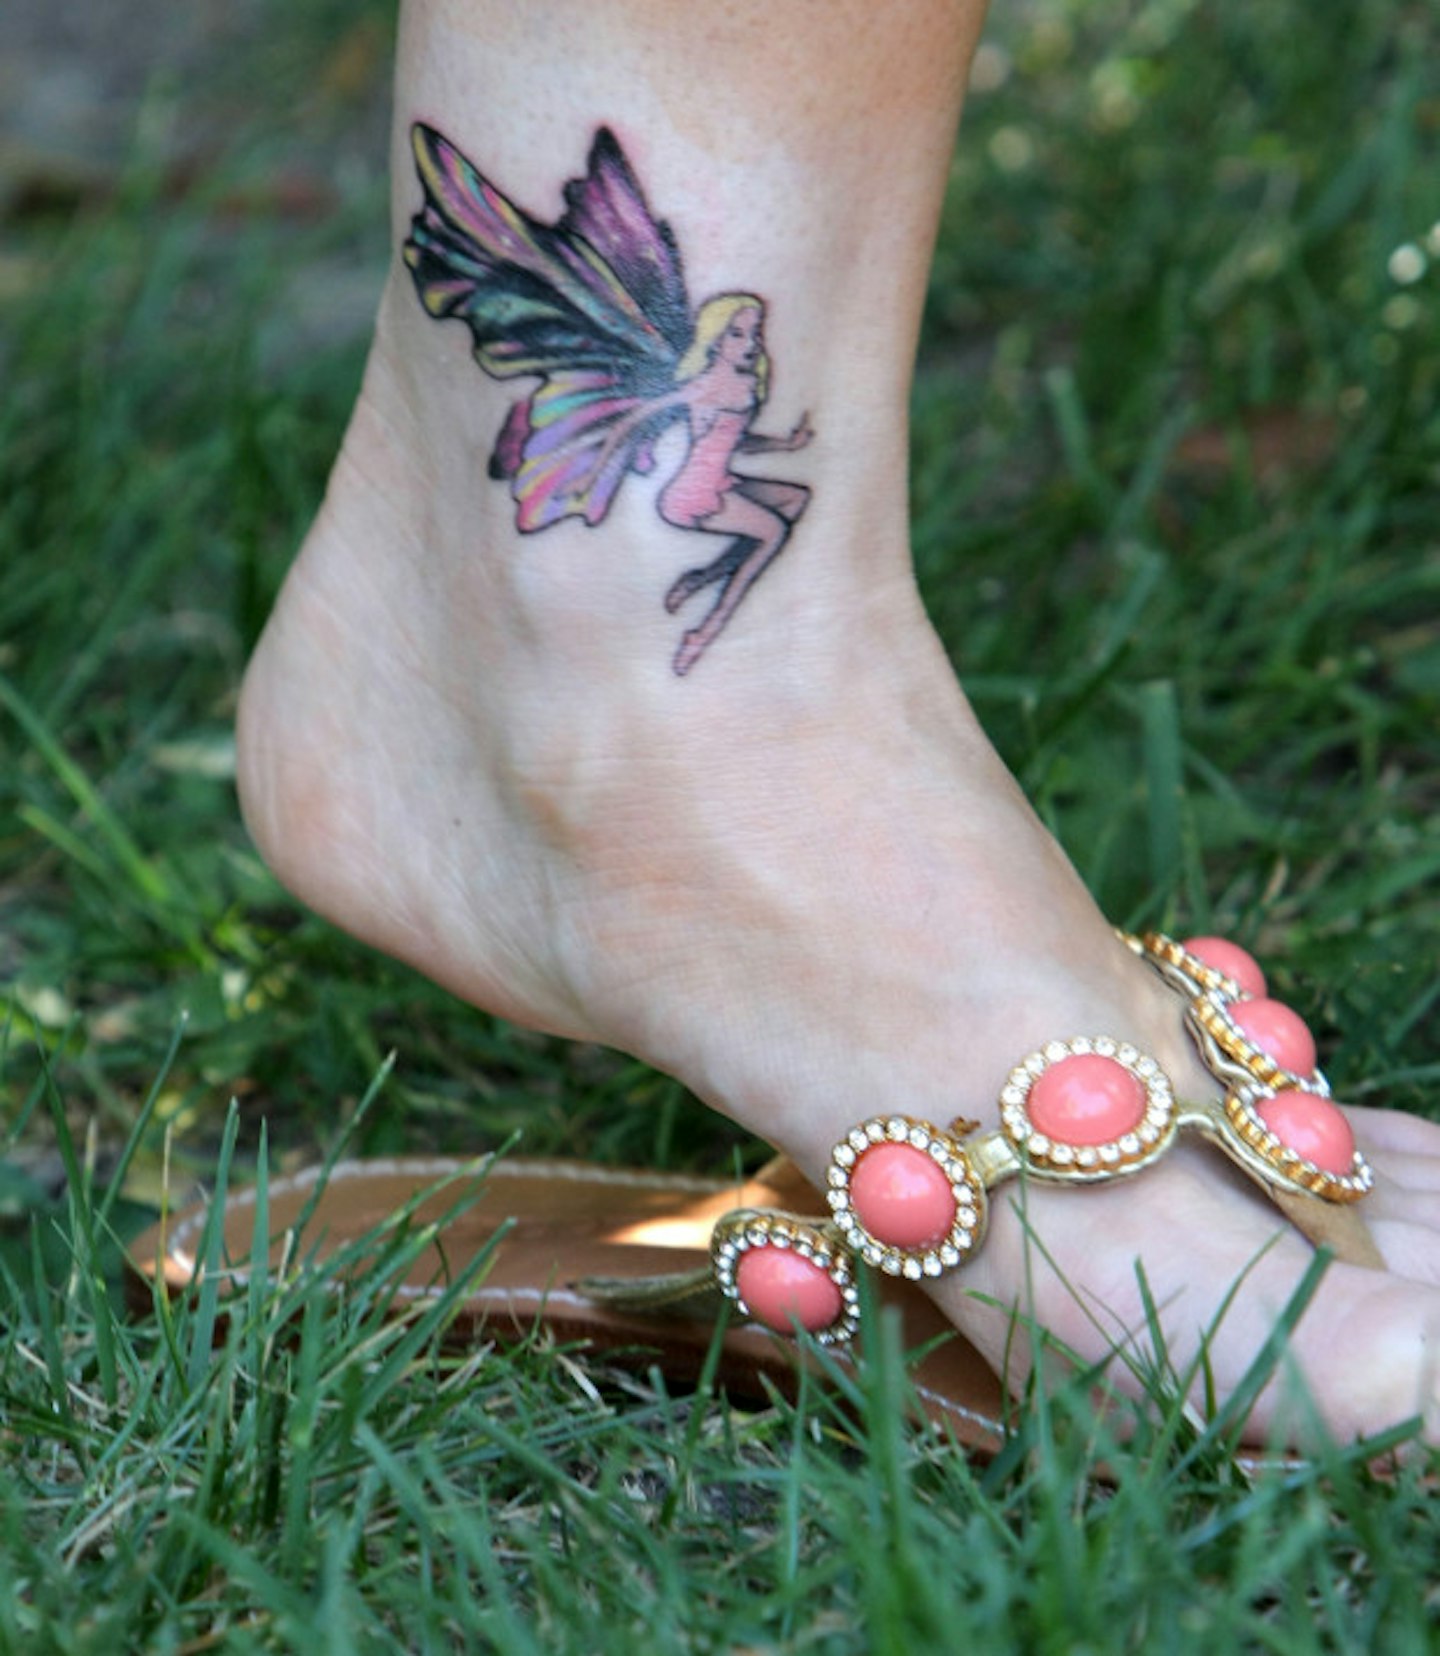 10. A fairy tattoo